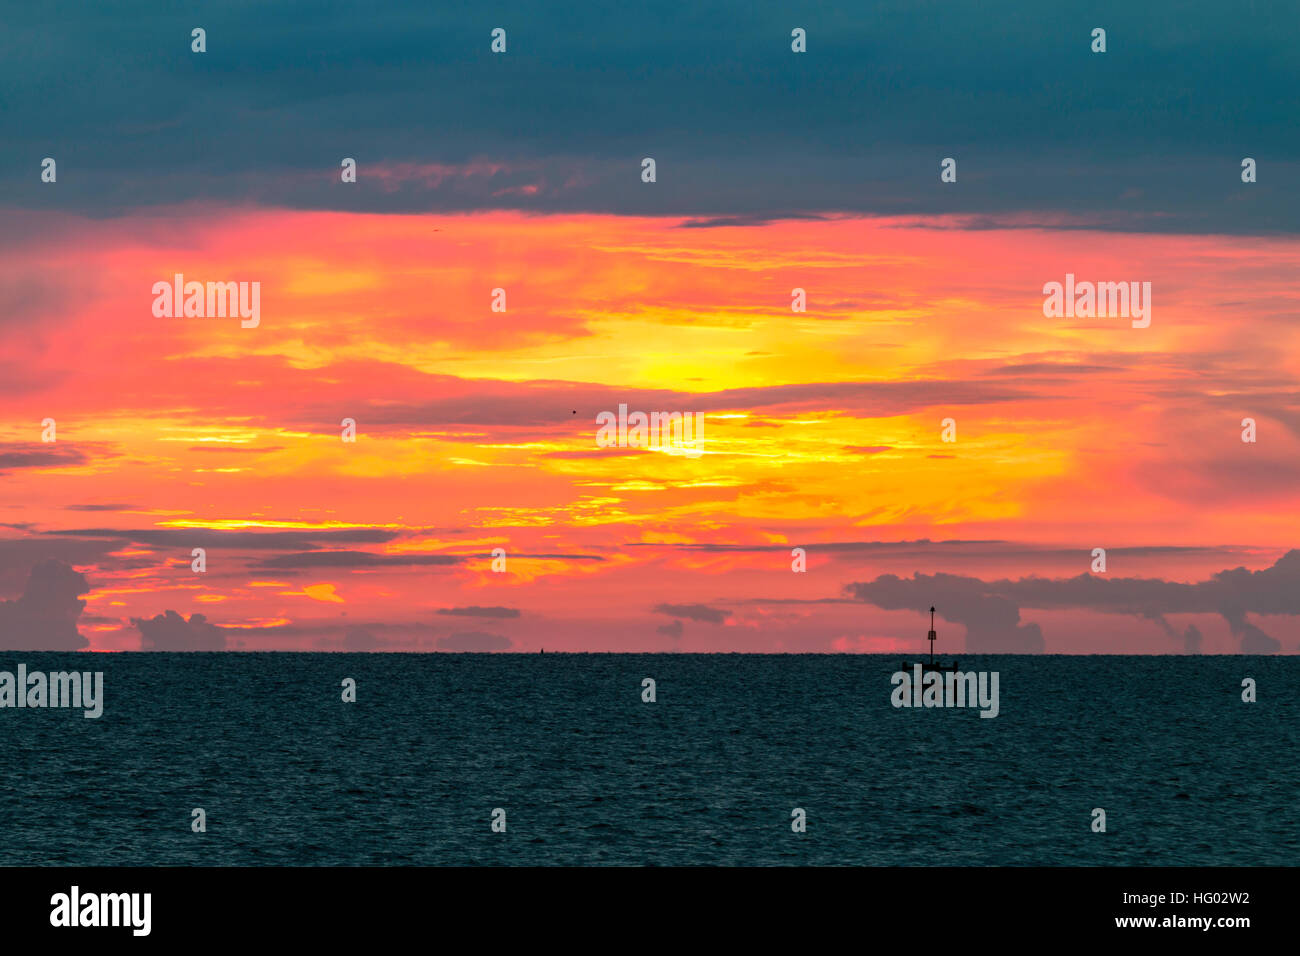 Inghilterra, Herne Bay. Canale Inglese a day break, drammatica di arancione e giallo sul cielo orizzonte con nuvole scure sopra. Bouy in primo piano. Foto Stock